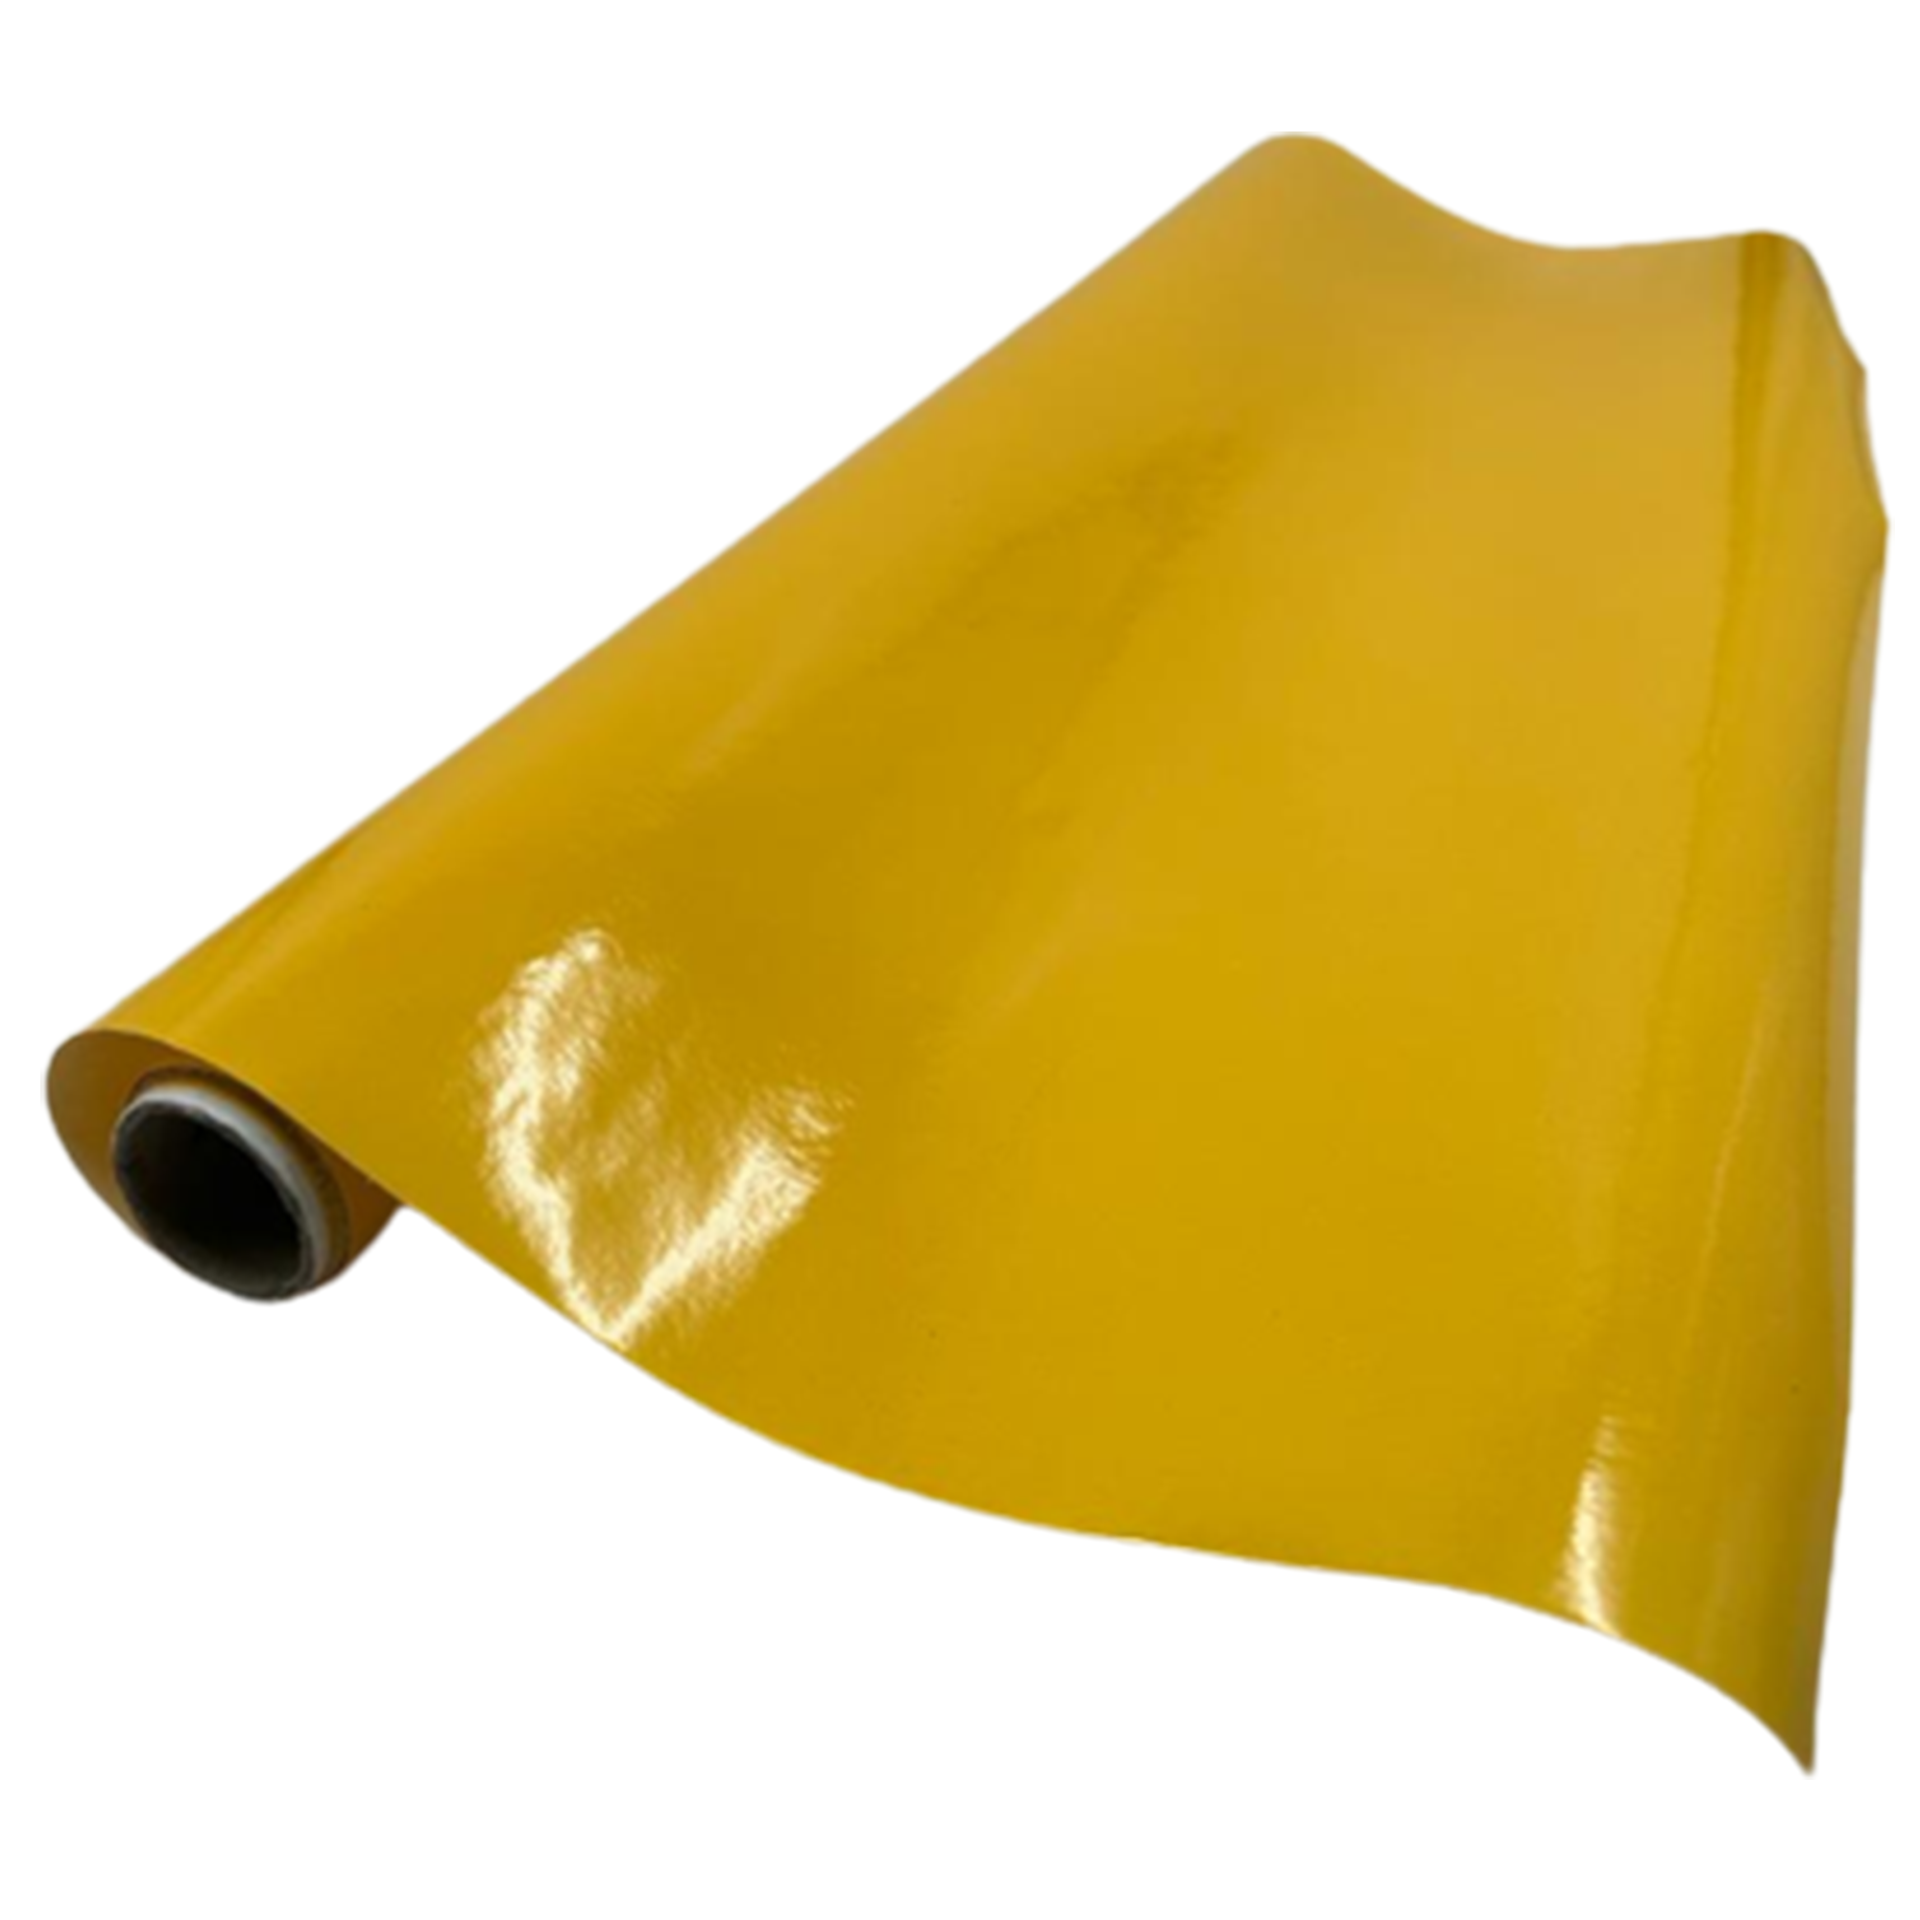 Hediye Paketleme Kağıdı - Sarı - 70 cm x 3 metre - Hediye Ambalaj Kağıdı